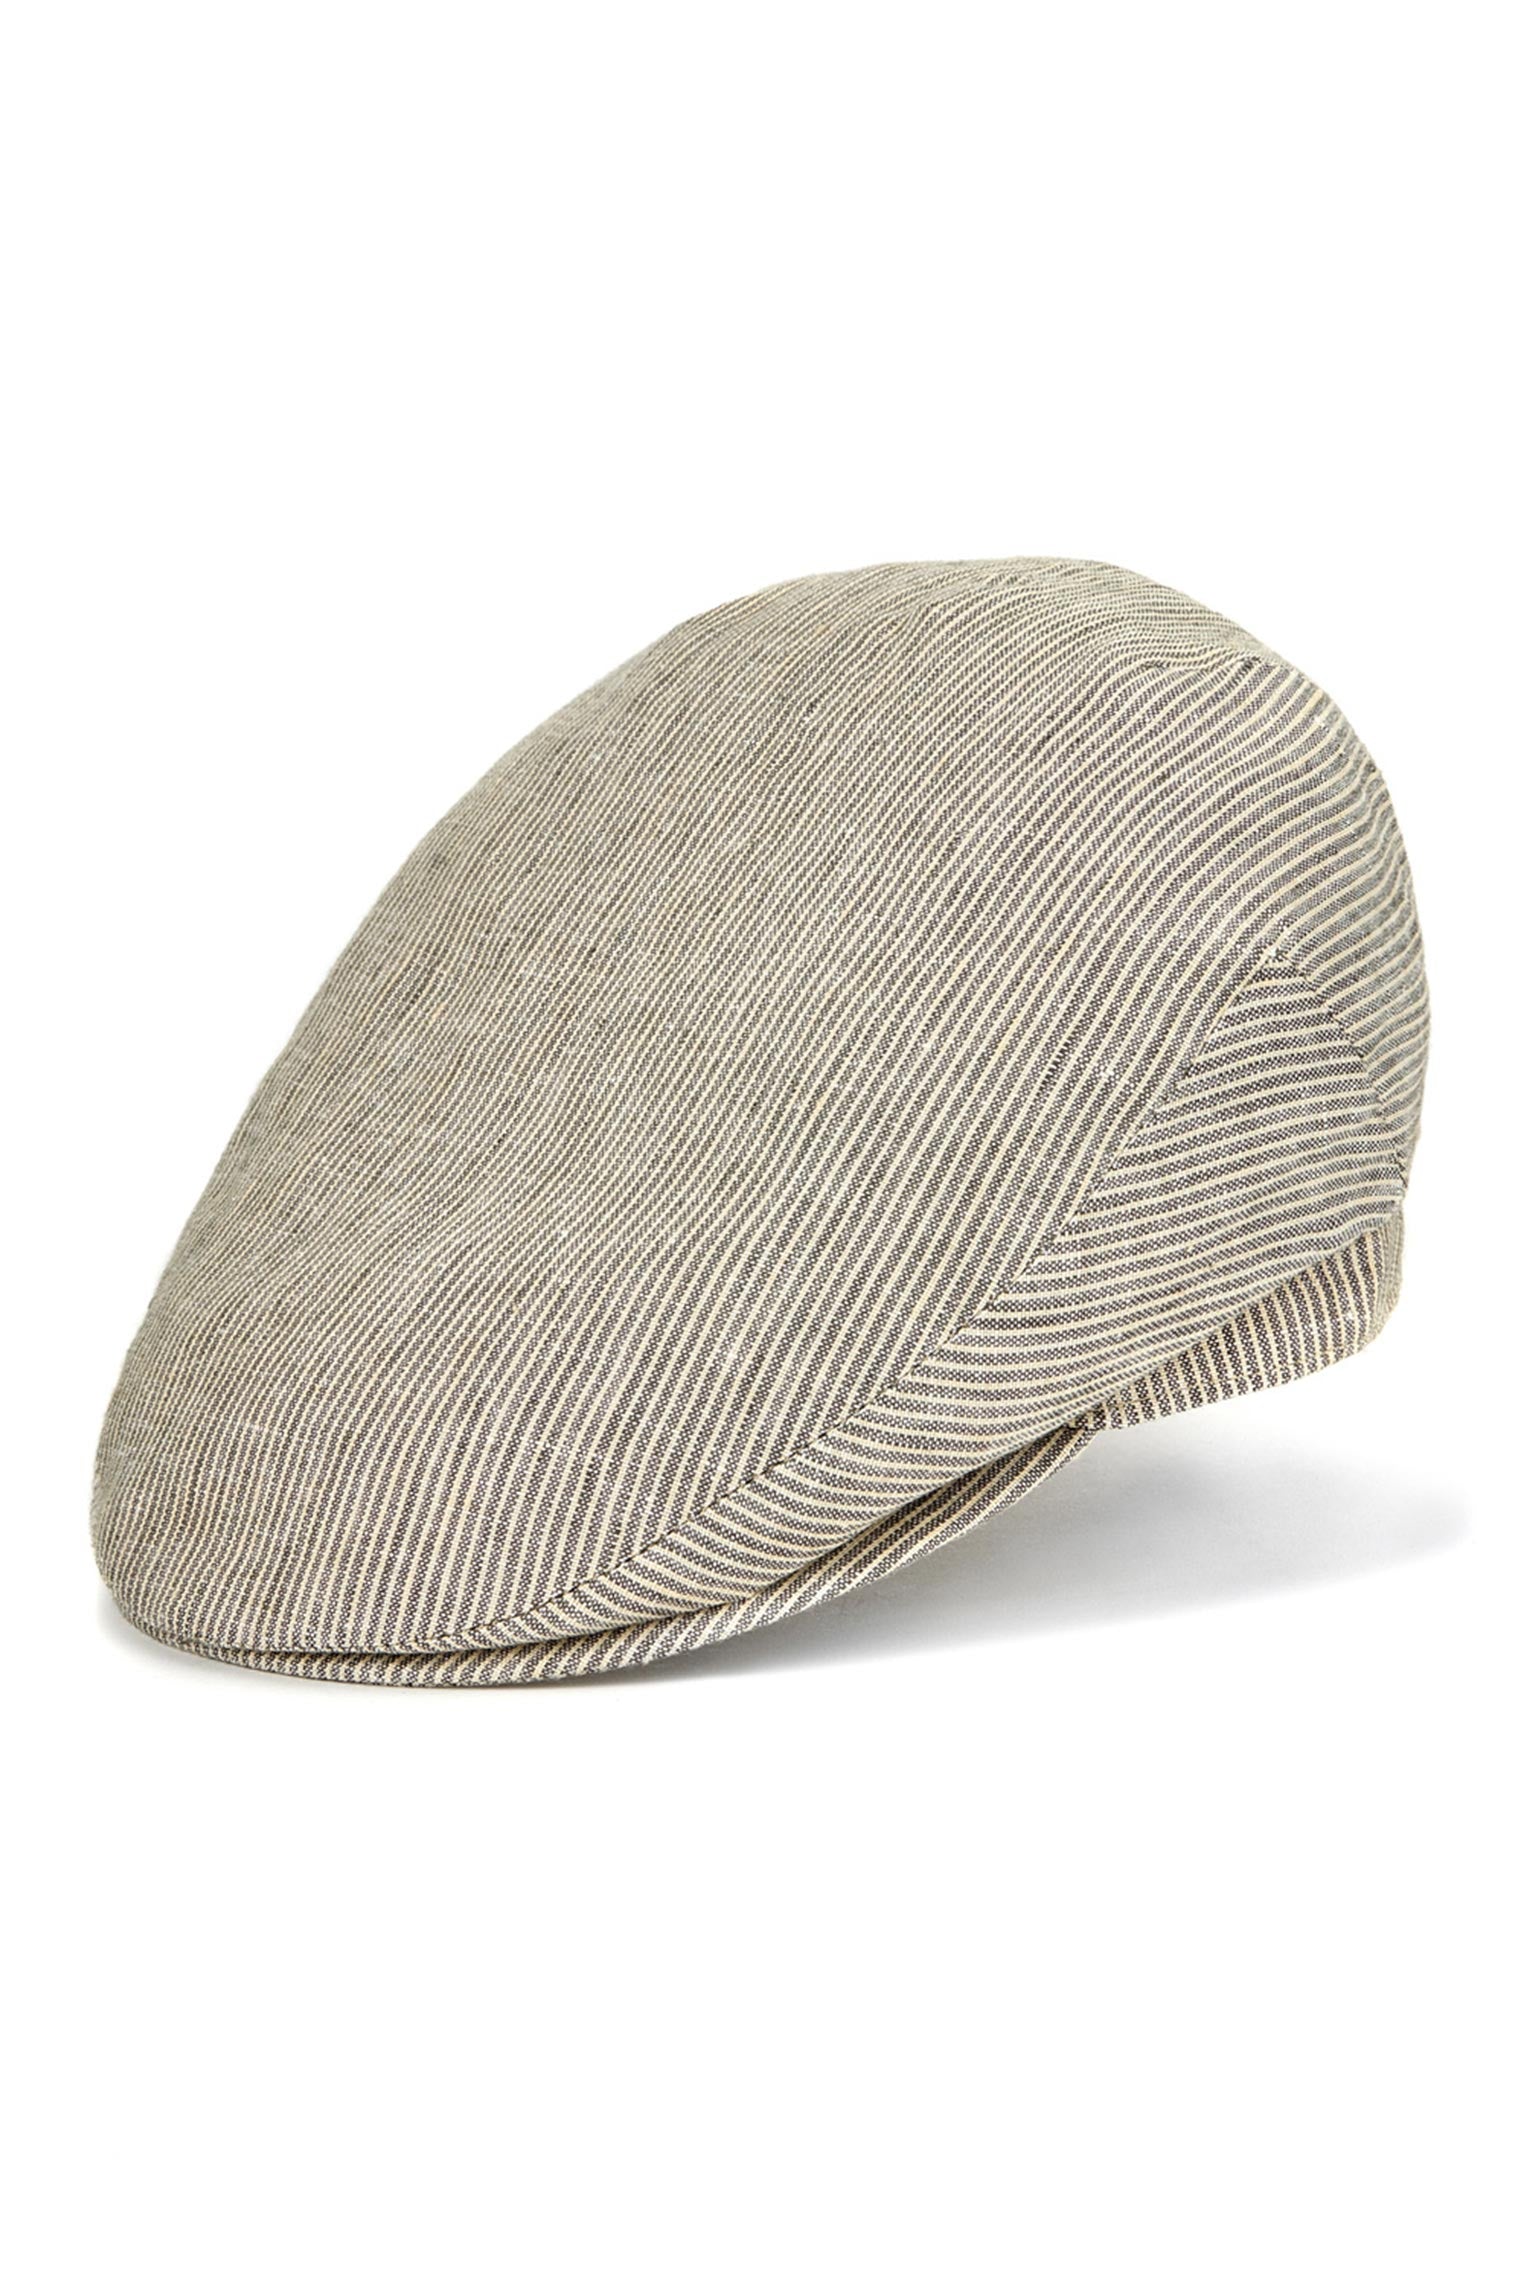 Cannes Linen Flat Cap - Cotton & Linen Hats & Caps - Lock & Co. Hatters London UK